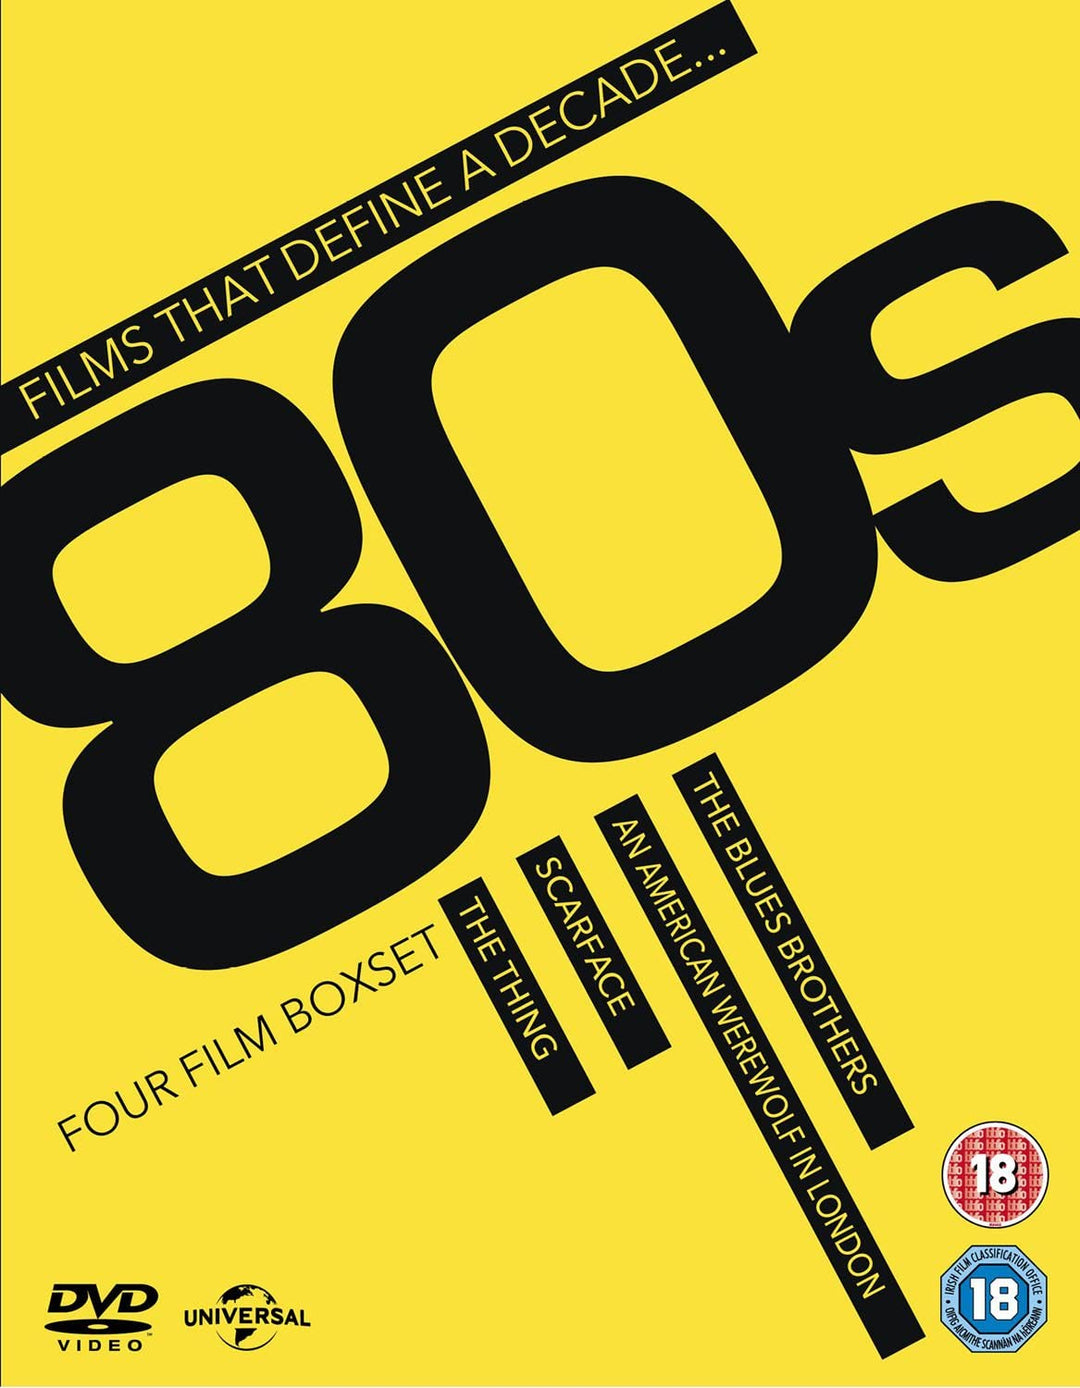 Filme, die ein Jahrzehnt definieren: 80er Jahre – [DVD]